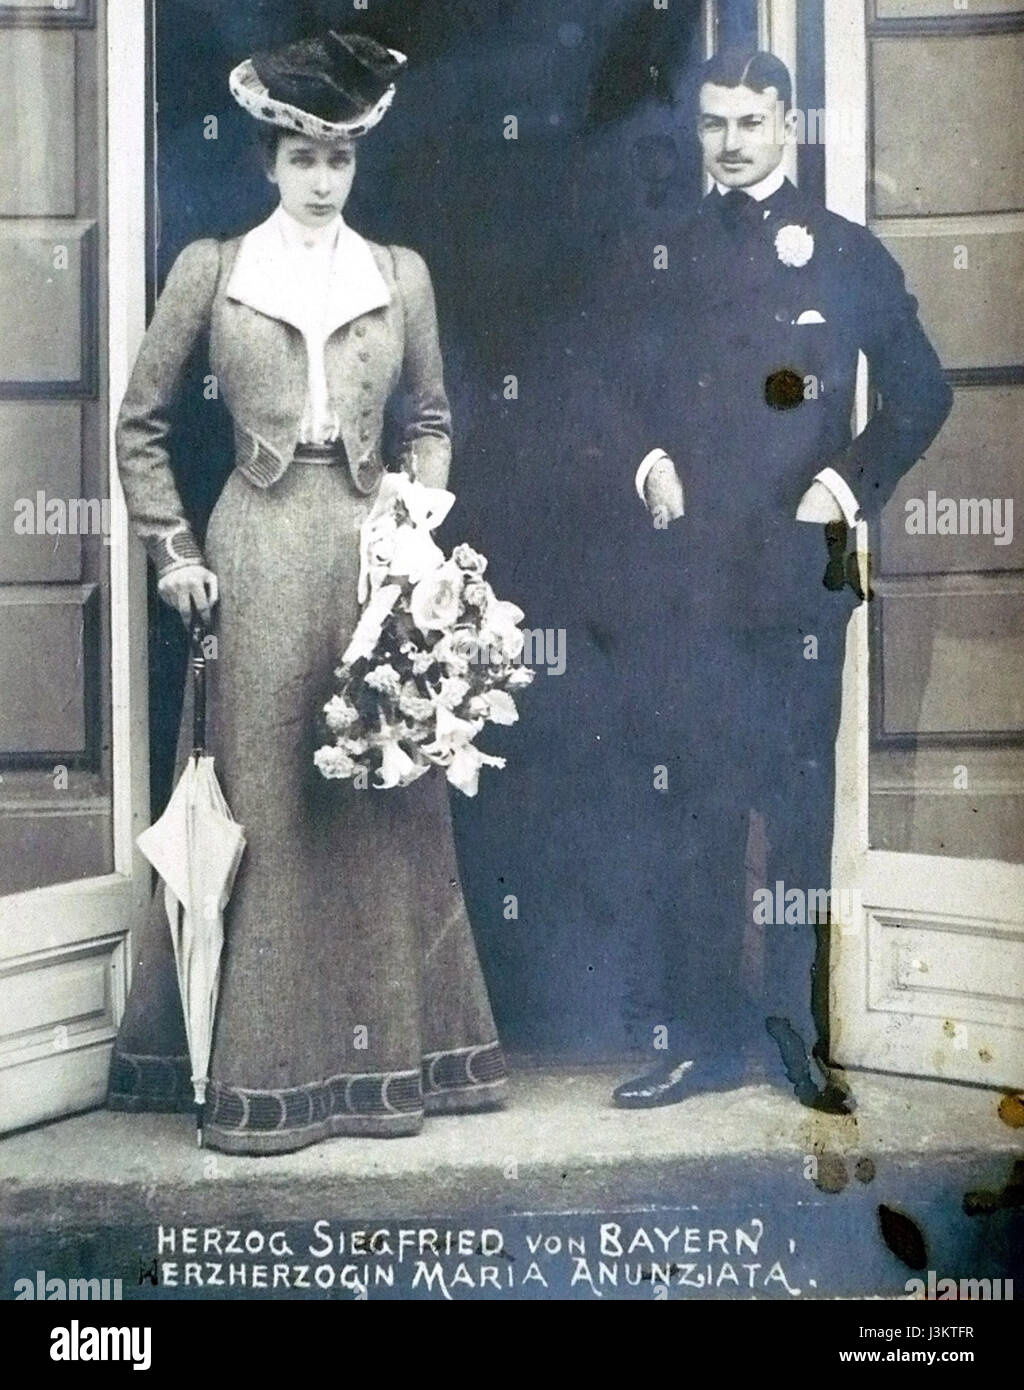 Siegfried Herzog dans Bayern mit Braut, 1902 Banque D'Images